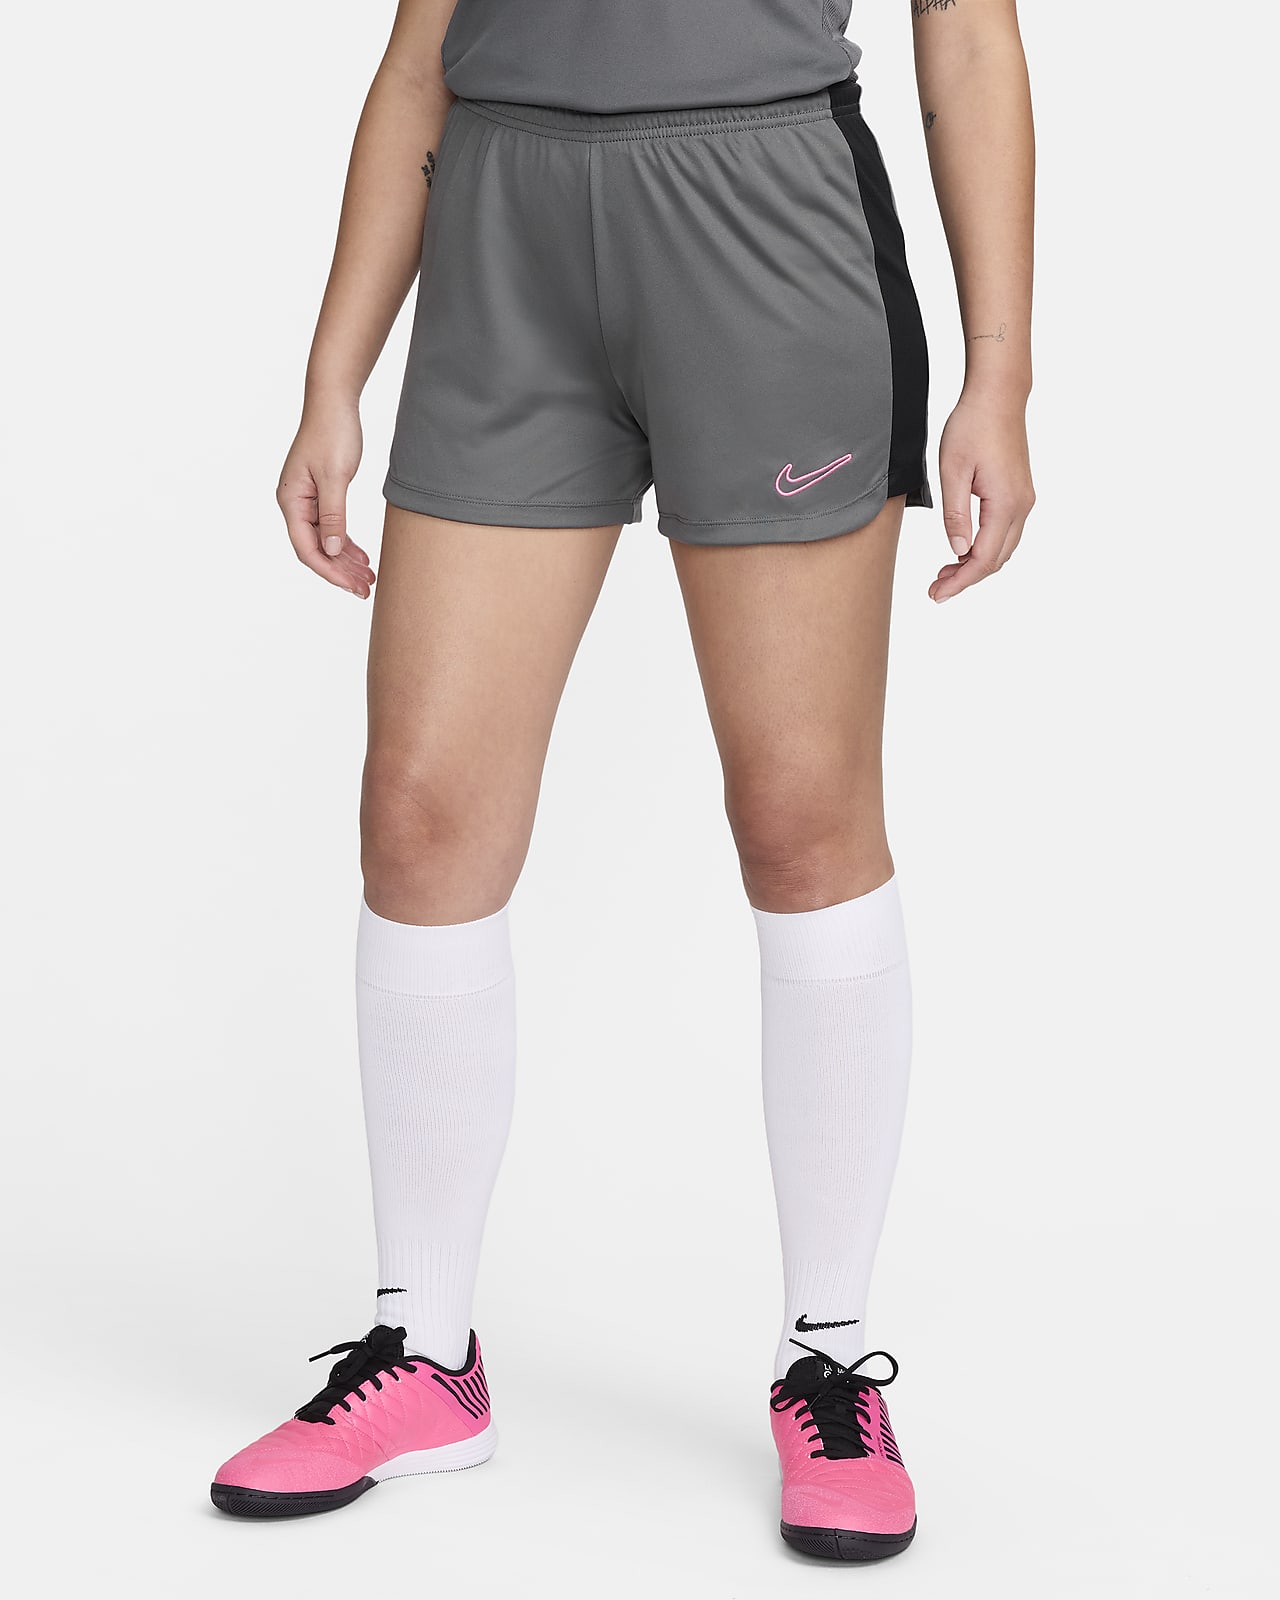 New Nike Women's RUNNING Short Tights (Small) CV2729-010